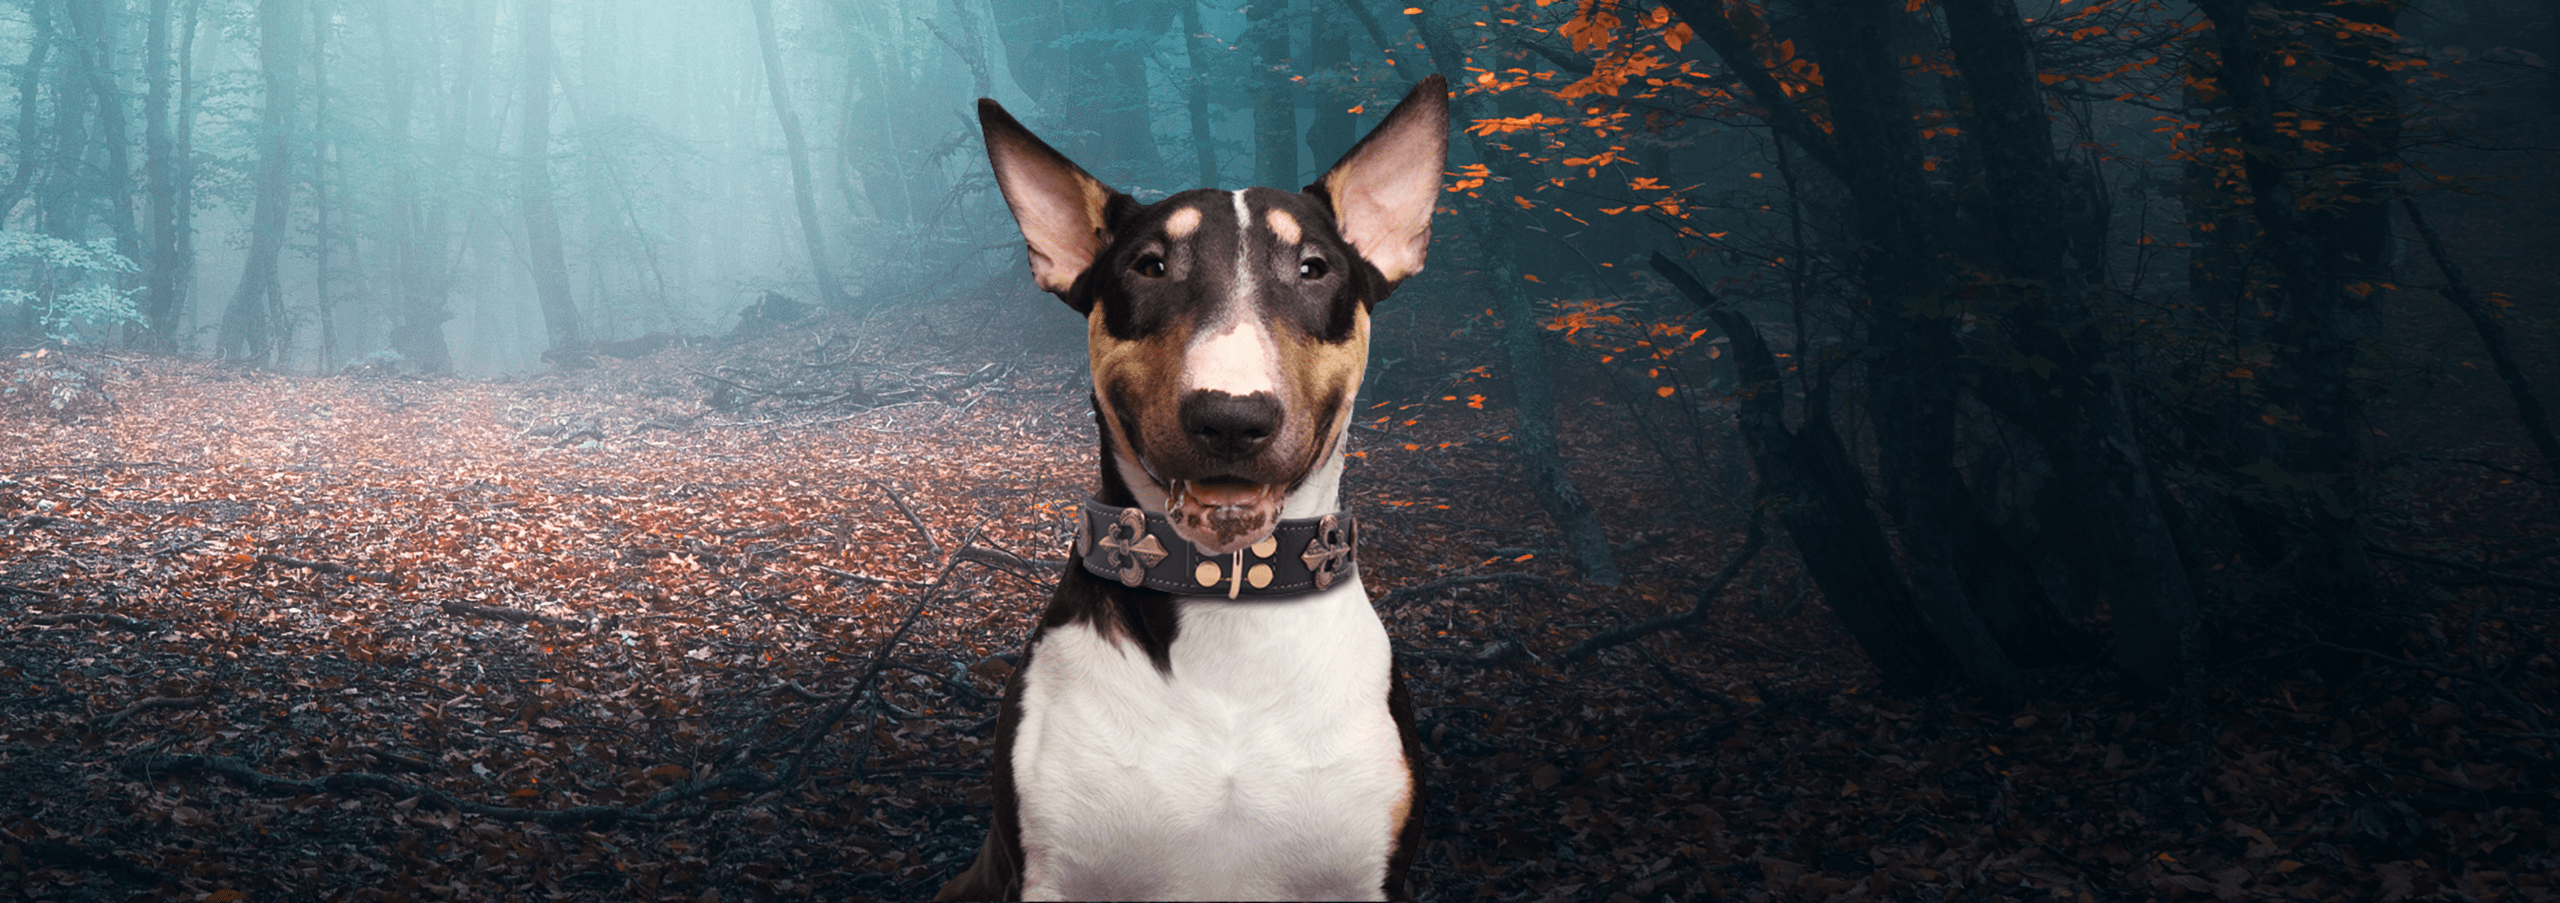 Luxus halsband hund - Die qualitativsten Luxus halsband hund verglichen